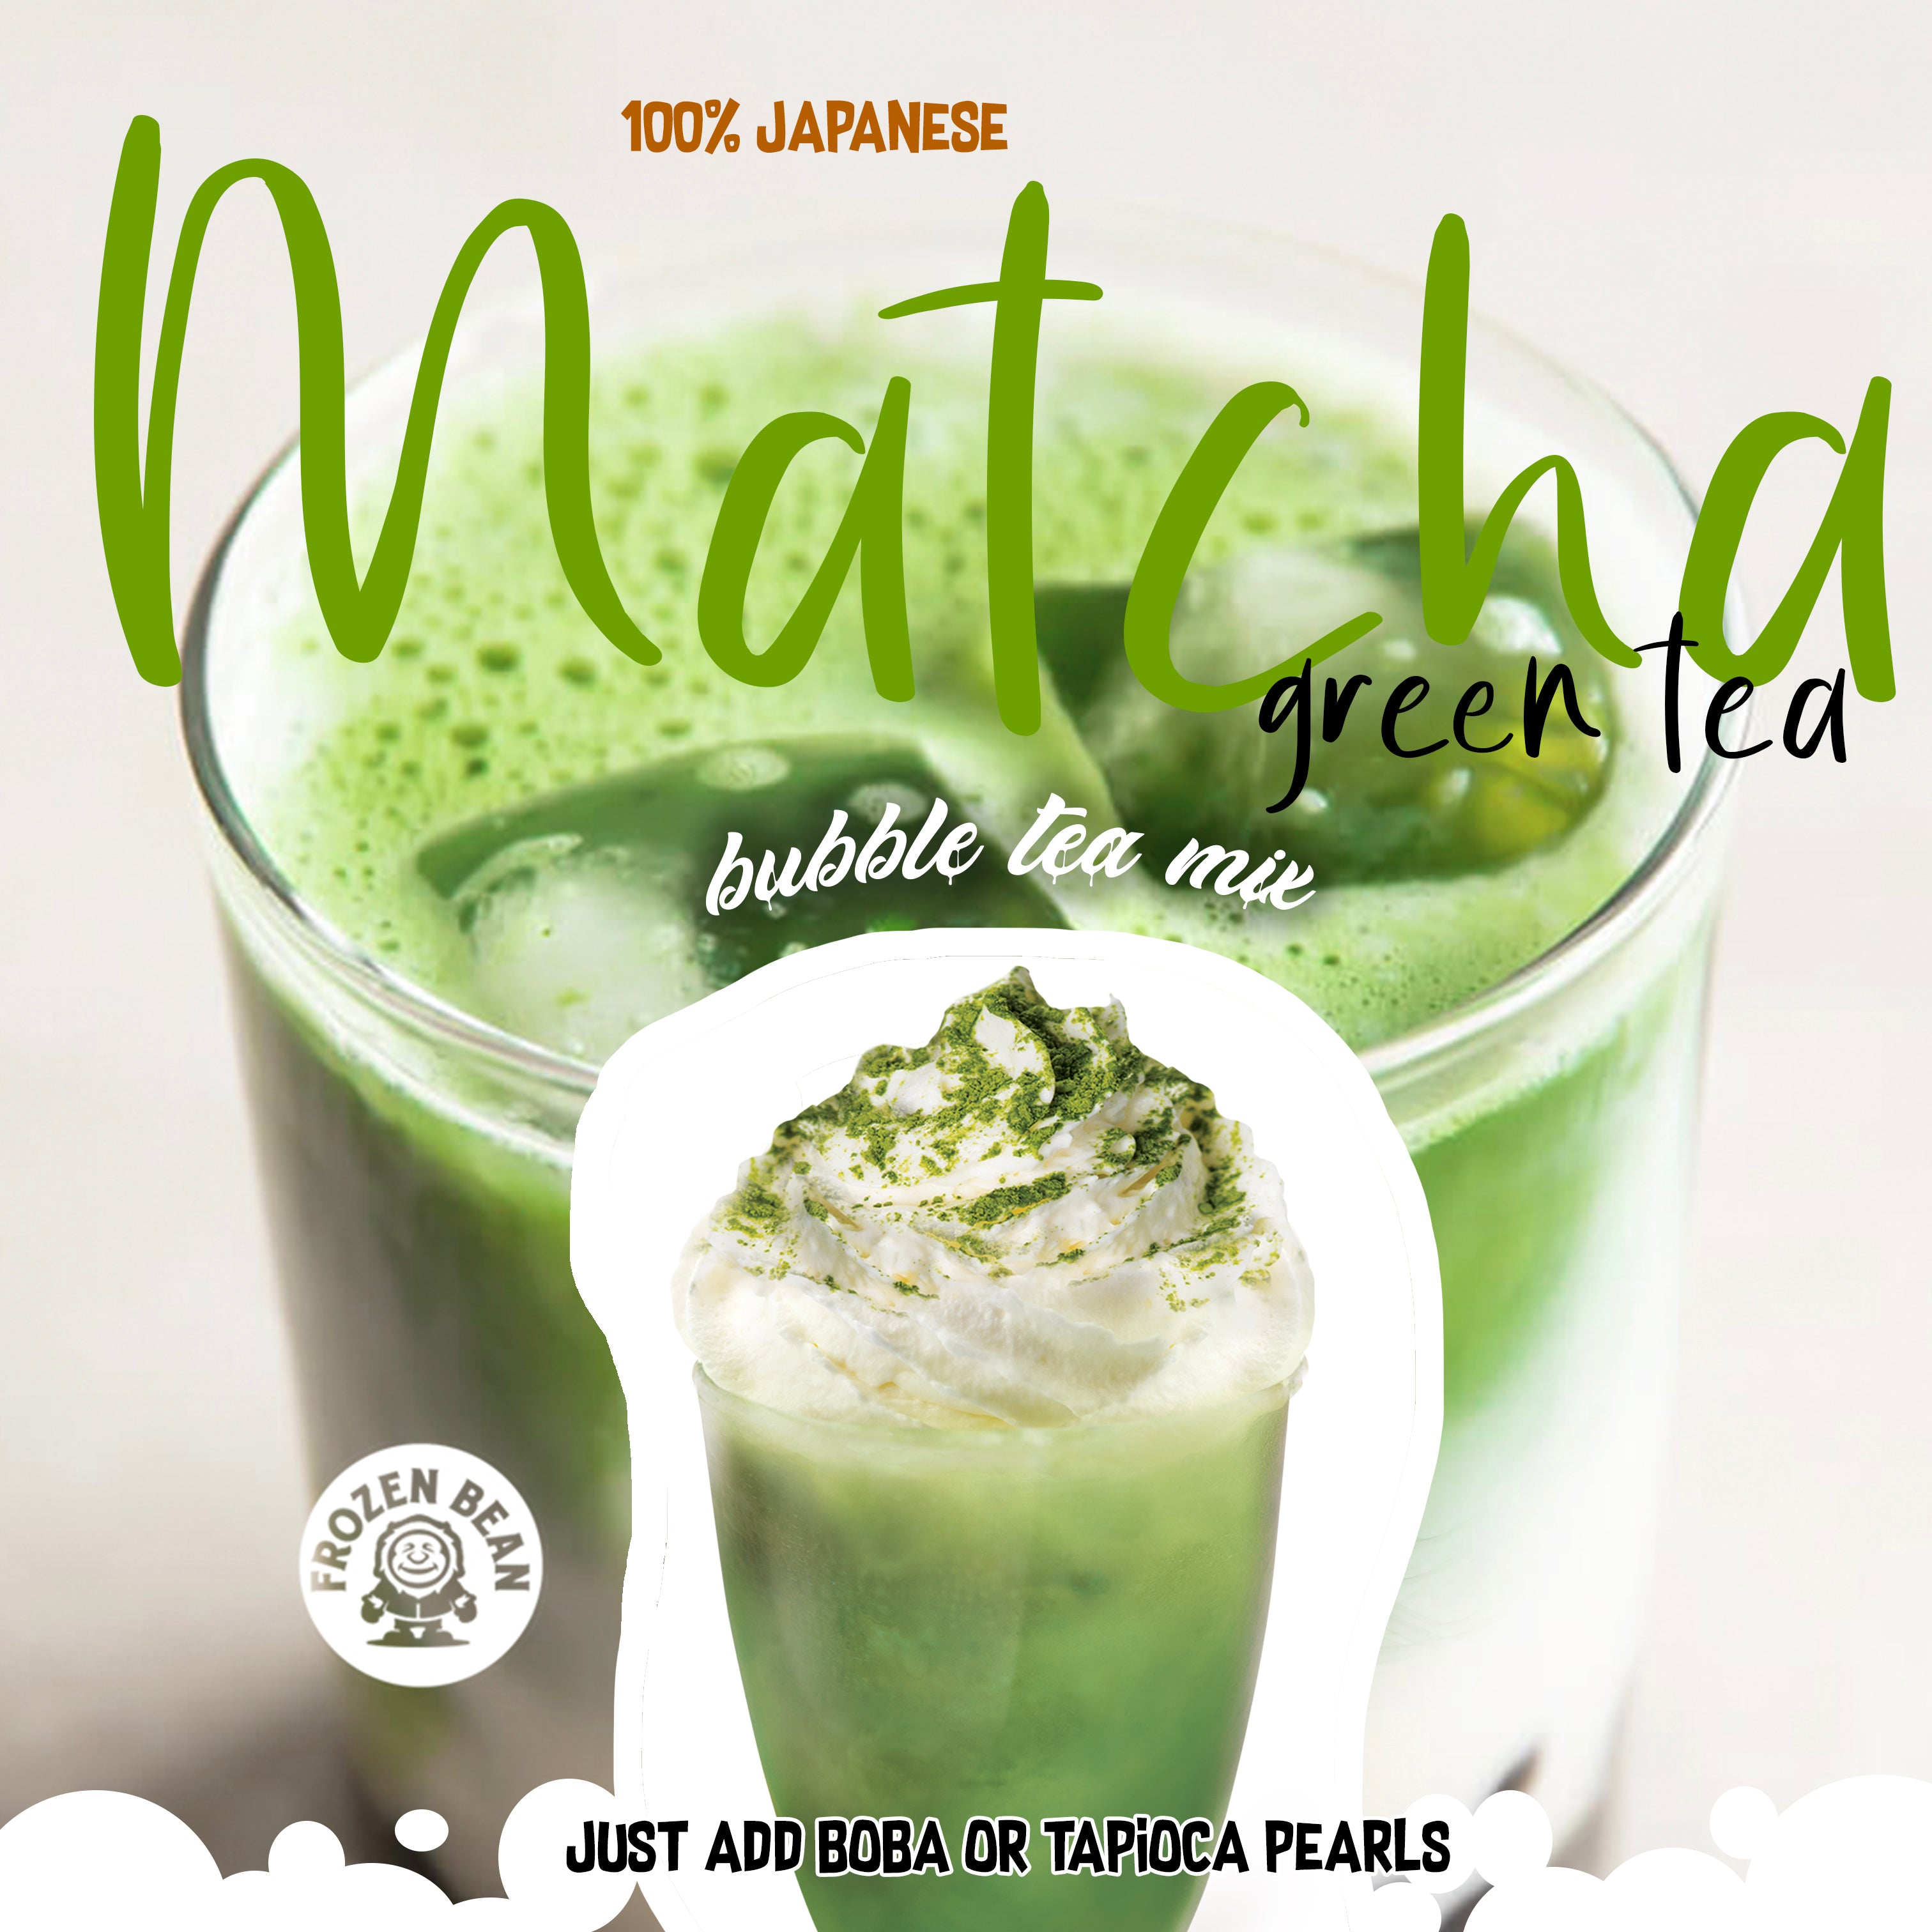 Ultra-Premium Matcha Green Tea - Bubble Tea Mix